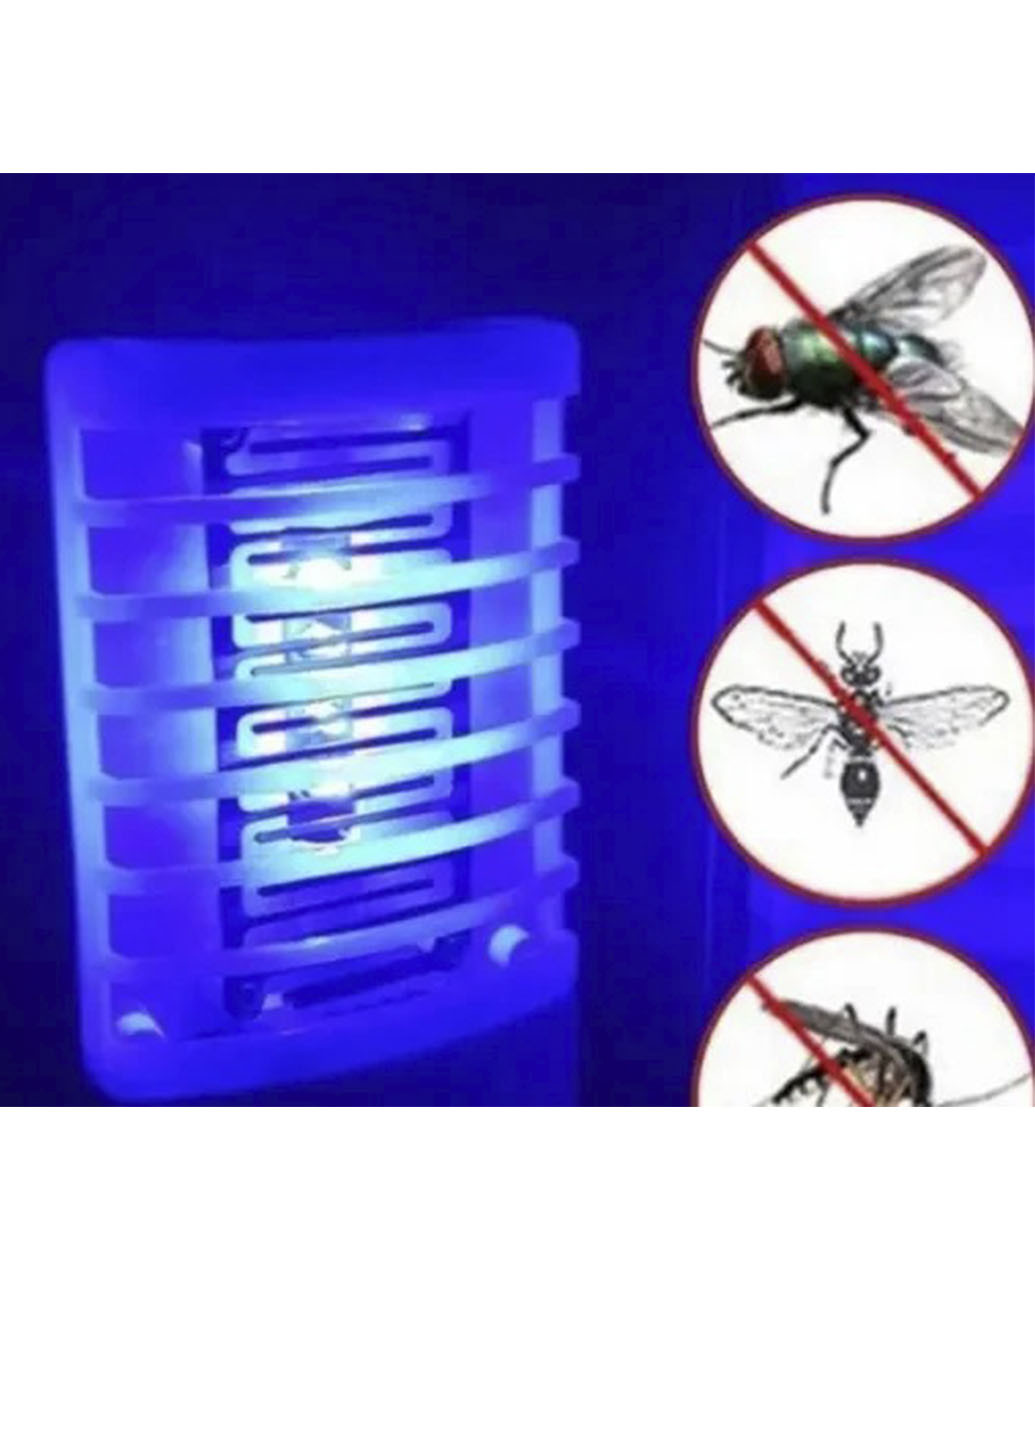 Ловушка для комаров TV10016 электро ловушка для насекомых лампа от XO (253033459)